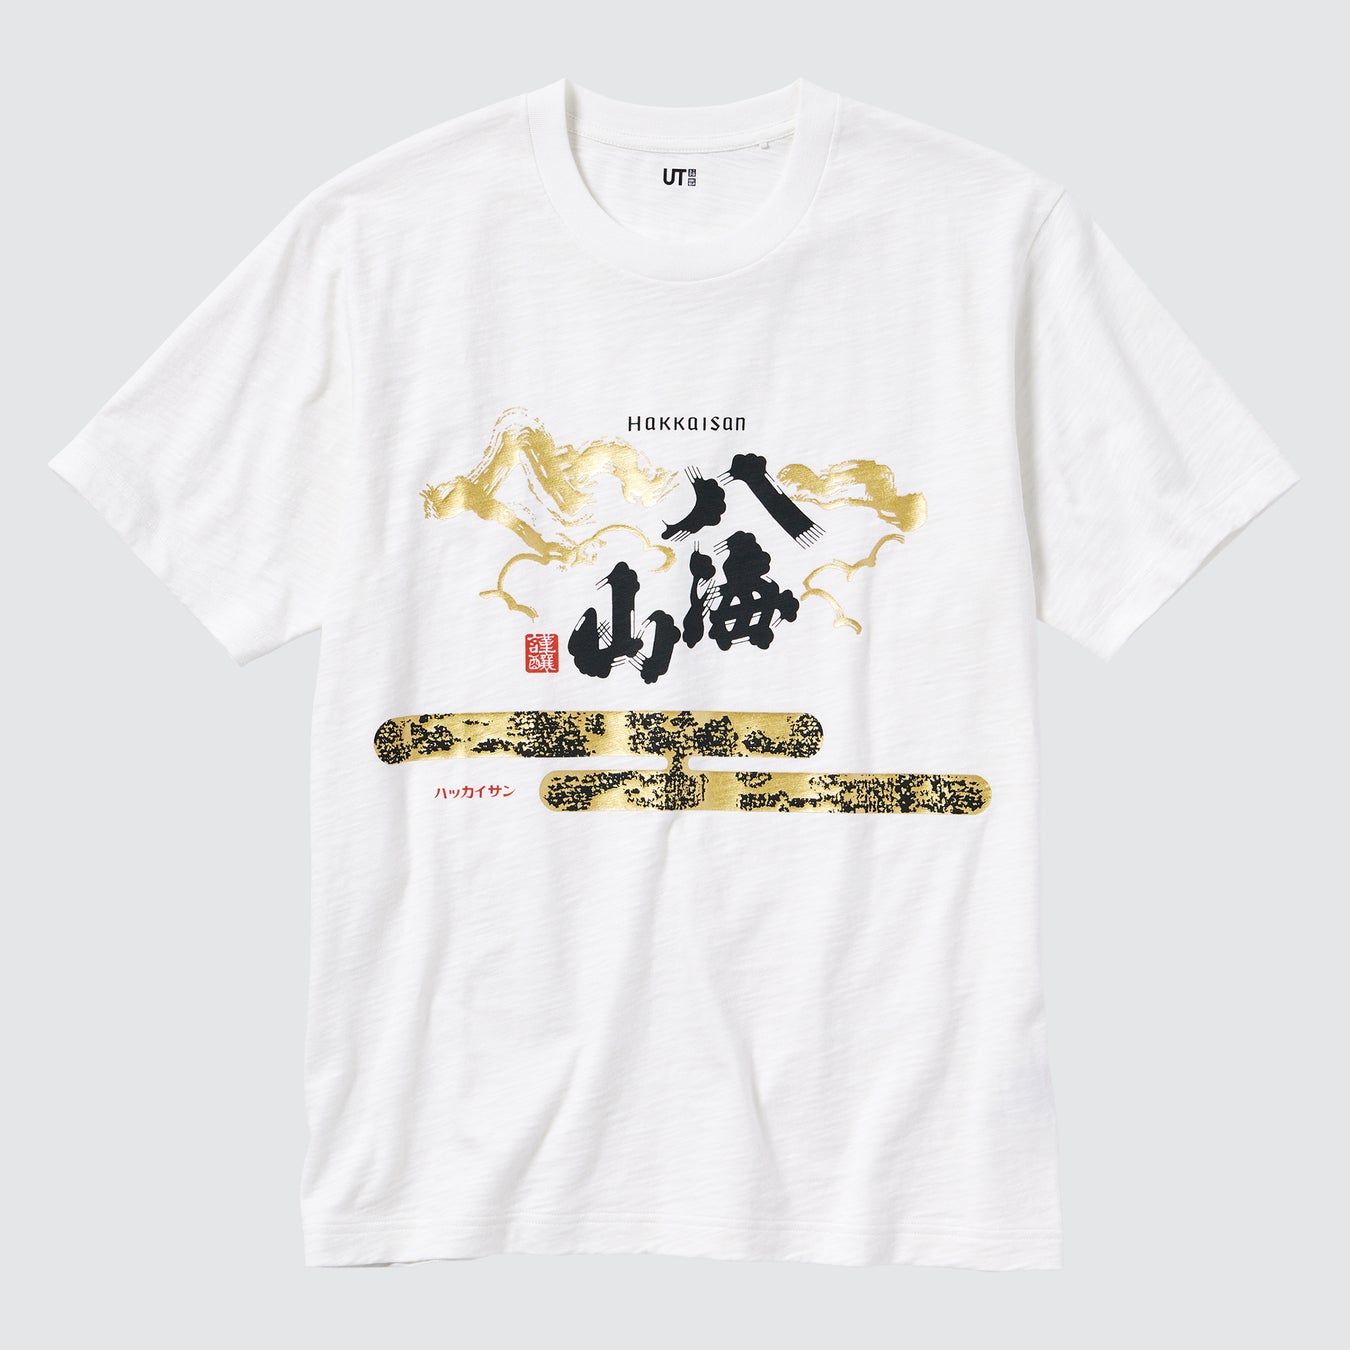 株式会社ユニクロ×八海醸造コラボレーションTシャツ発売